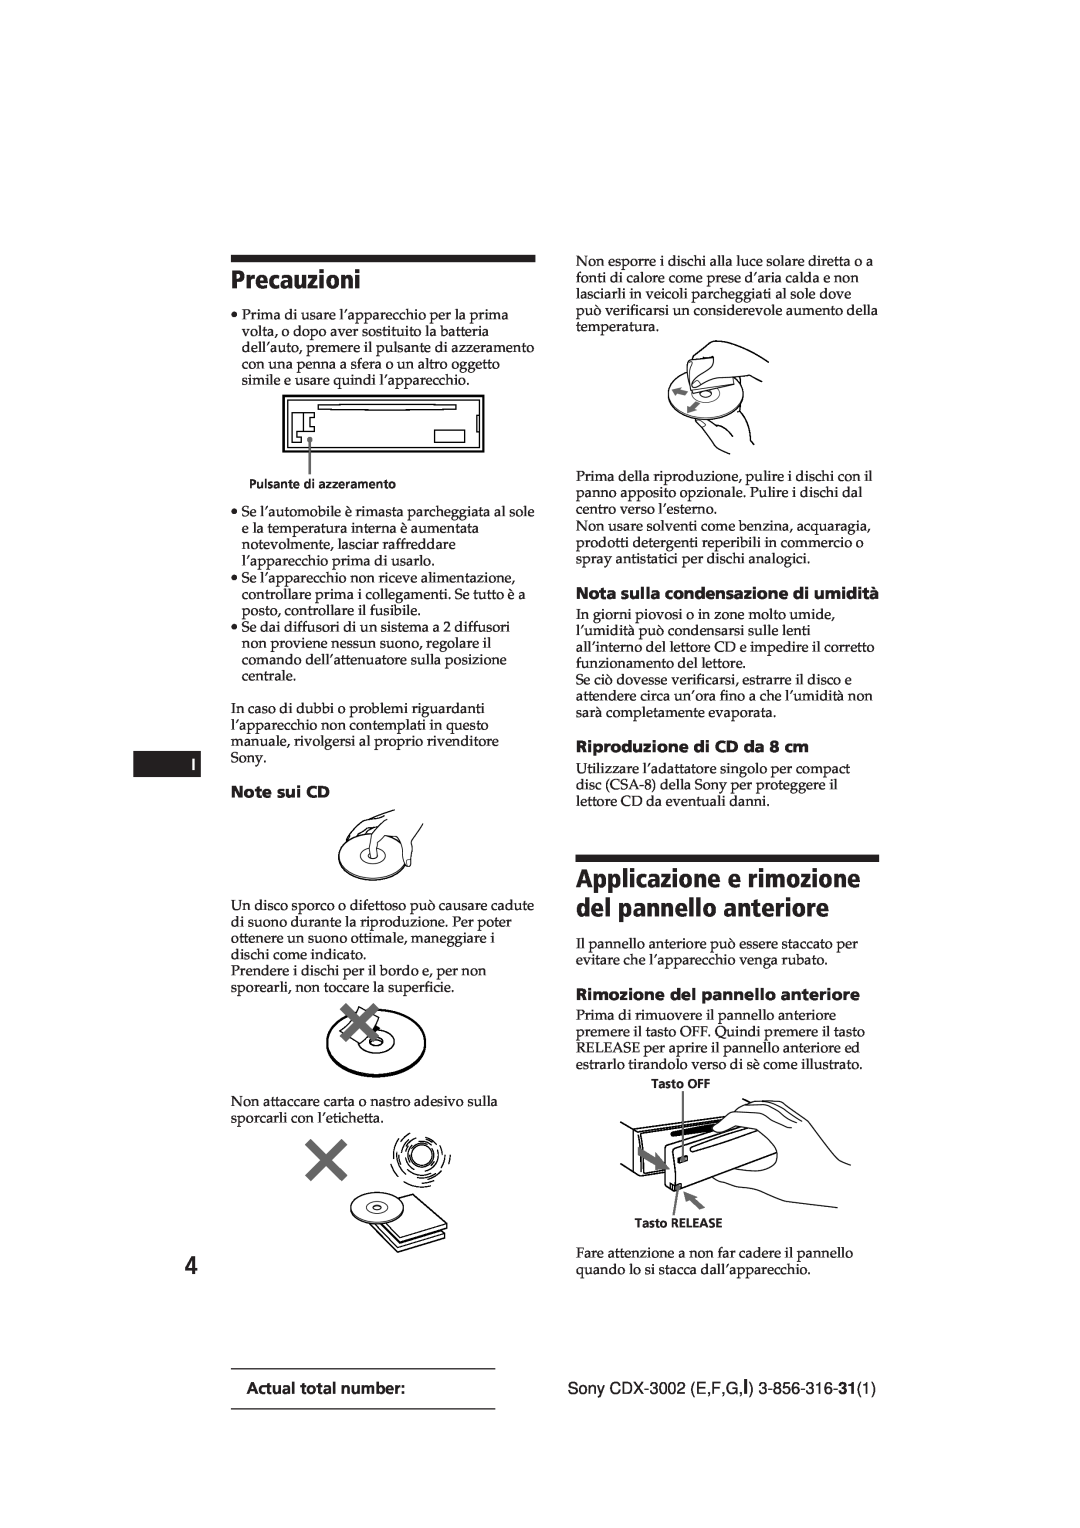 Sony CDX-3002 manual Precauzioni, Applicazione e rimozione del pannello anteriore, Note sui CD, Riproduzione di CD da 8 cm 